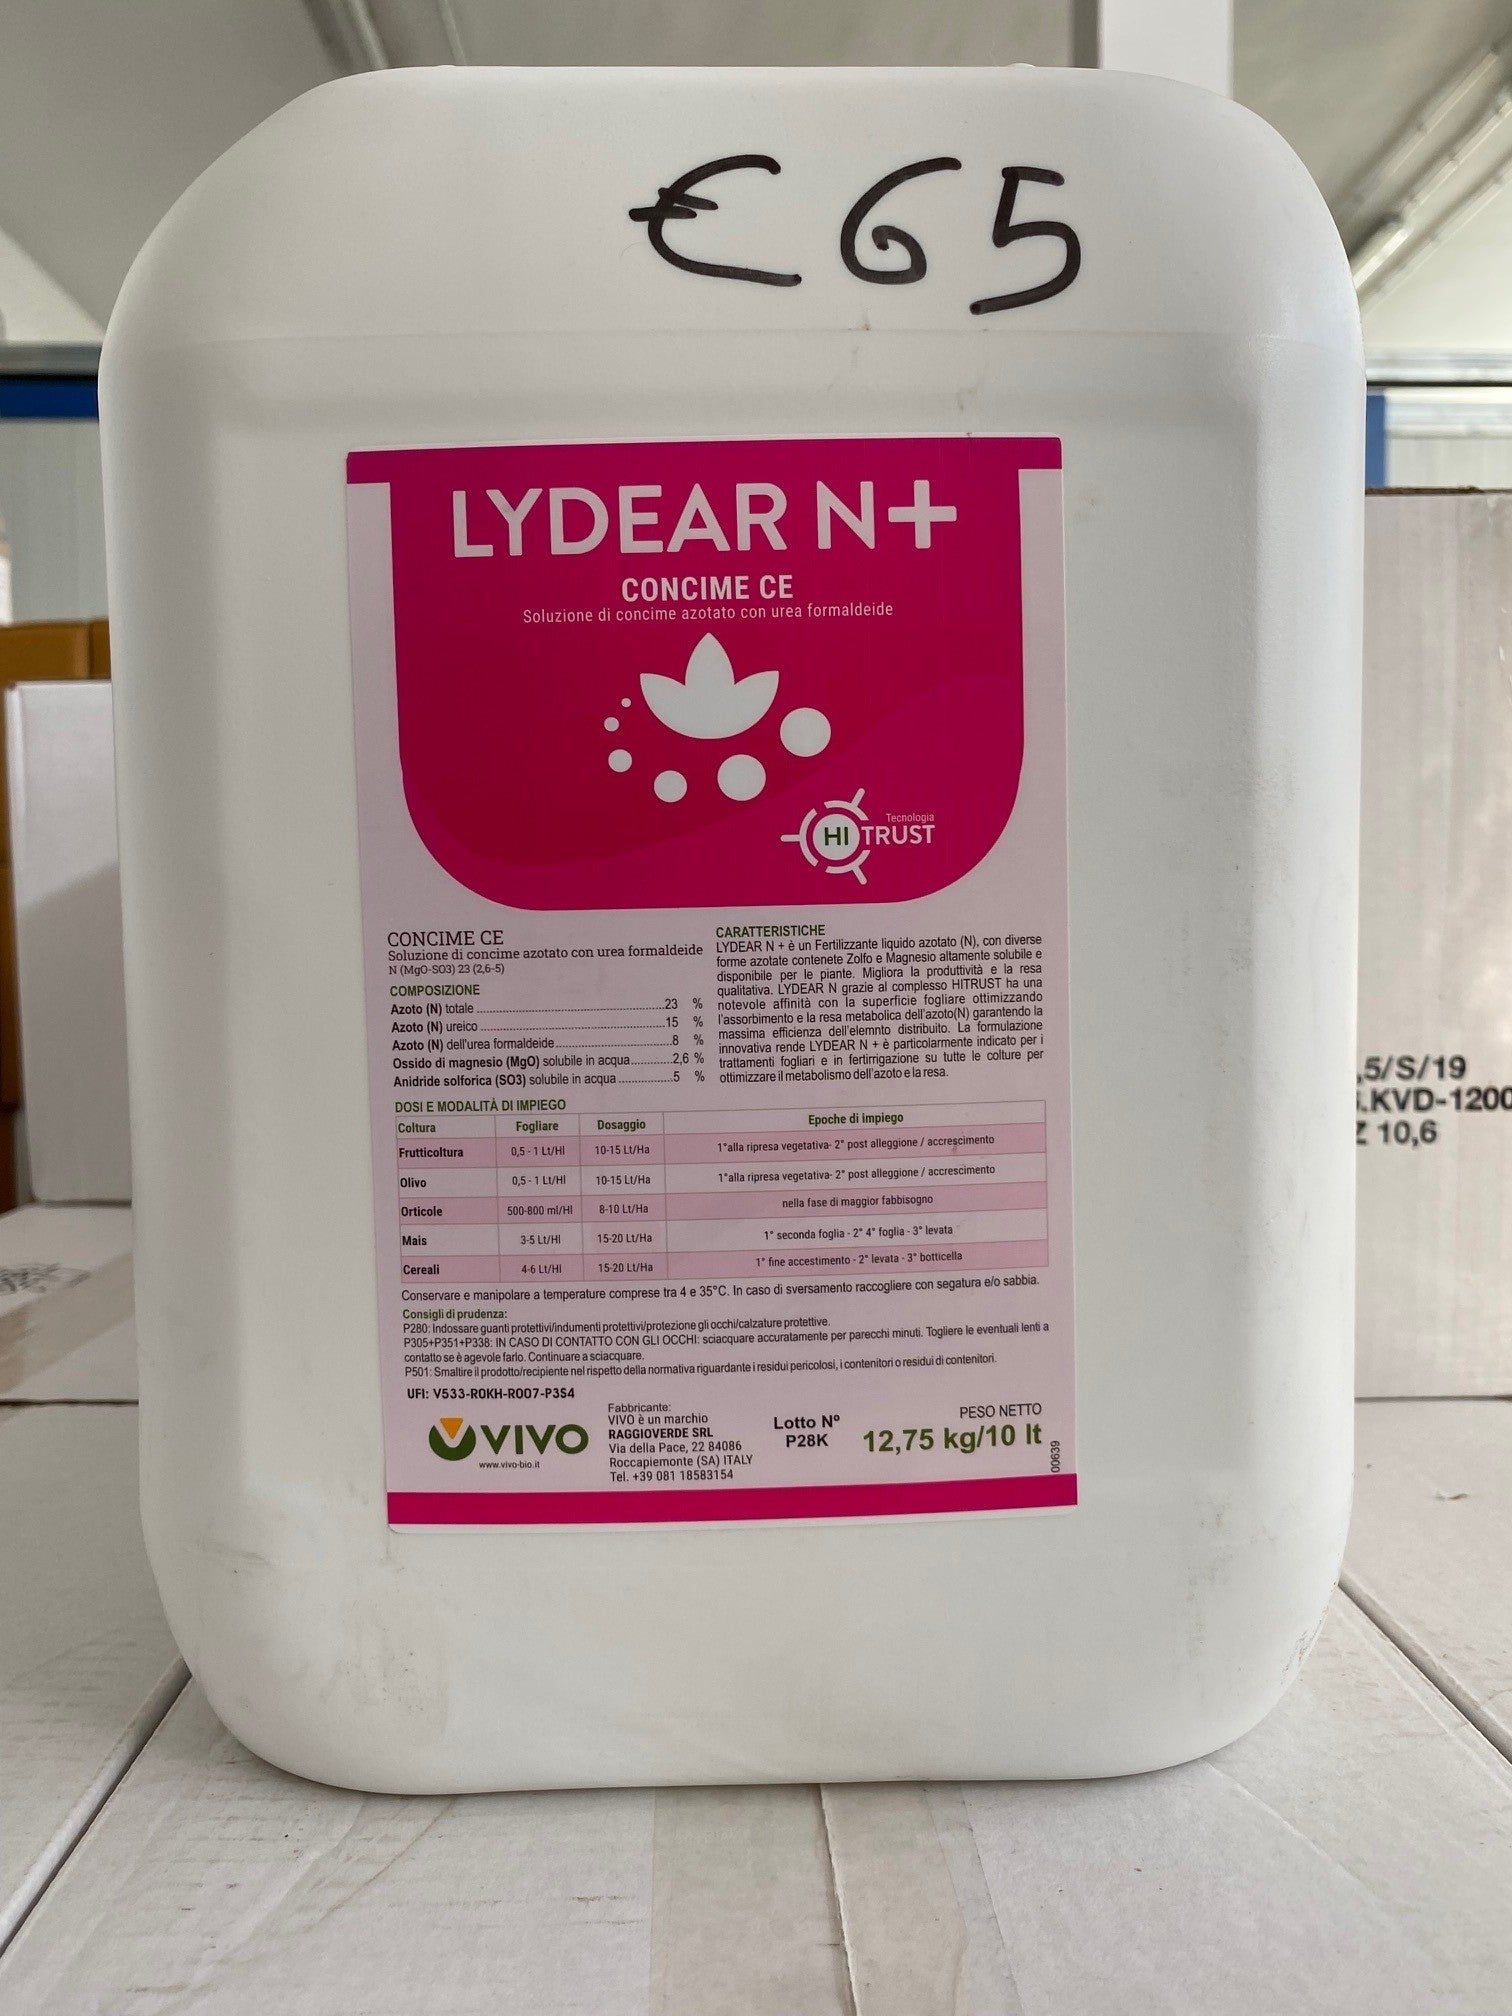 LYDEAR N+ - Fertilizzante liquido per migliorare la produttività e la resa qualitativa di orticole e alberi